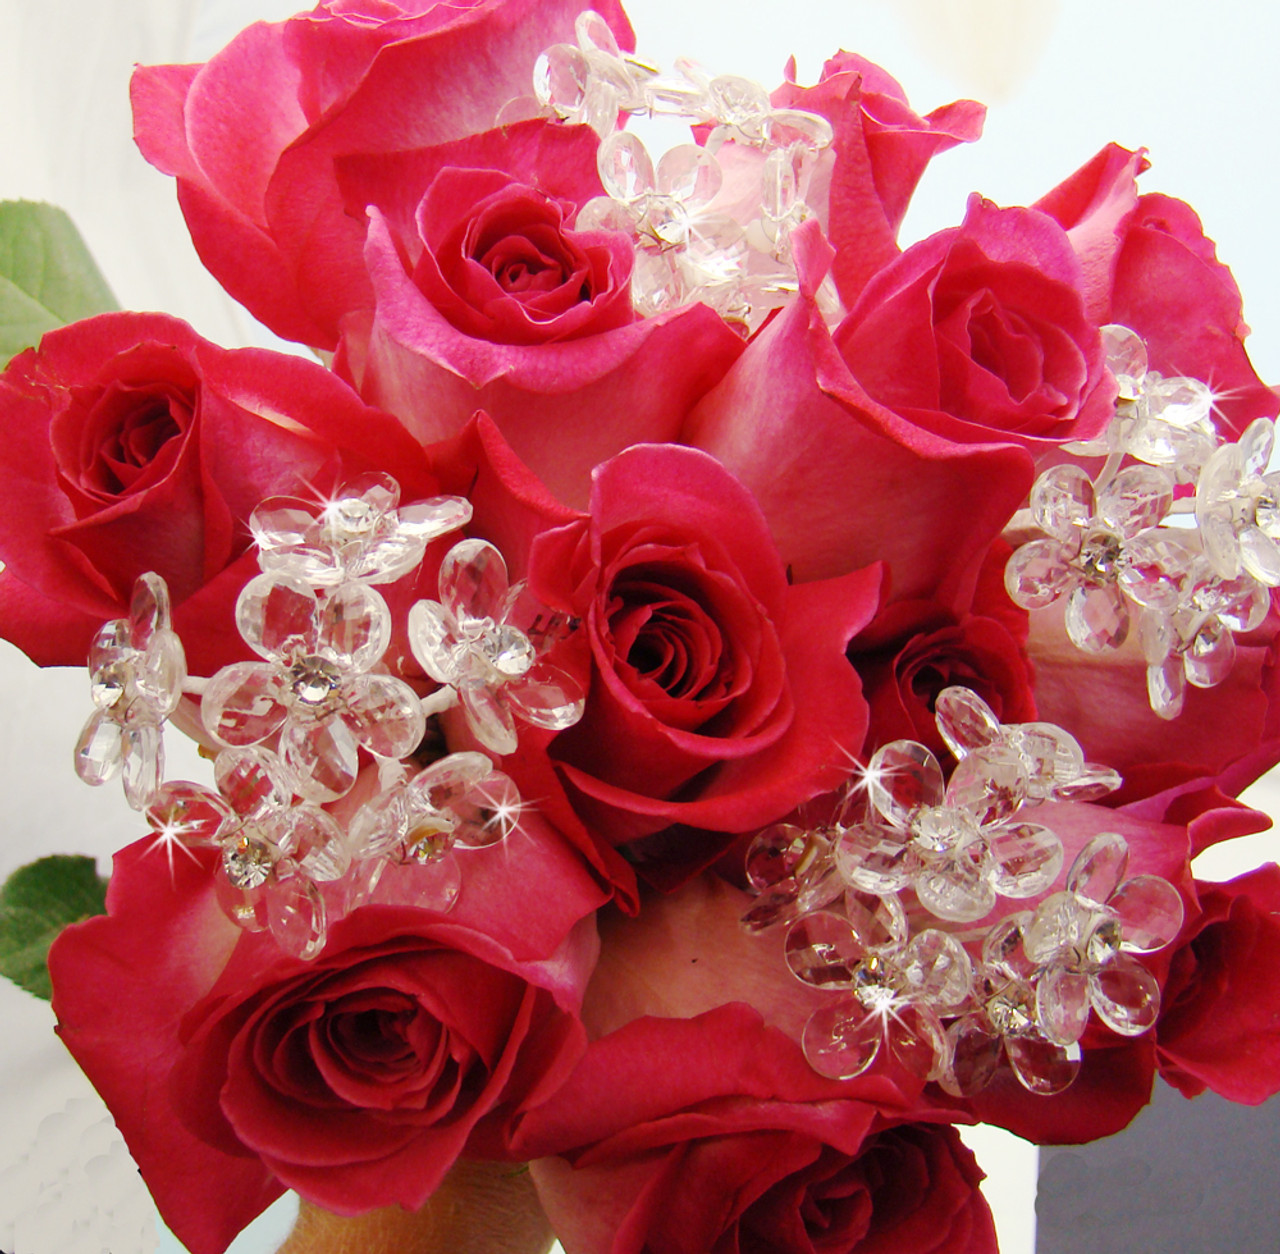 30 Pcs 13 Inch Heart Shape Metal Floral Picks Clip For Bouquet